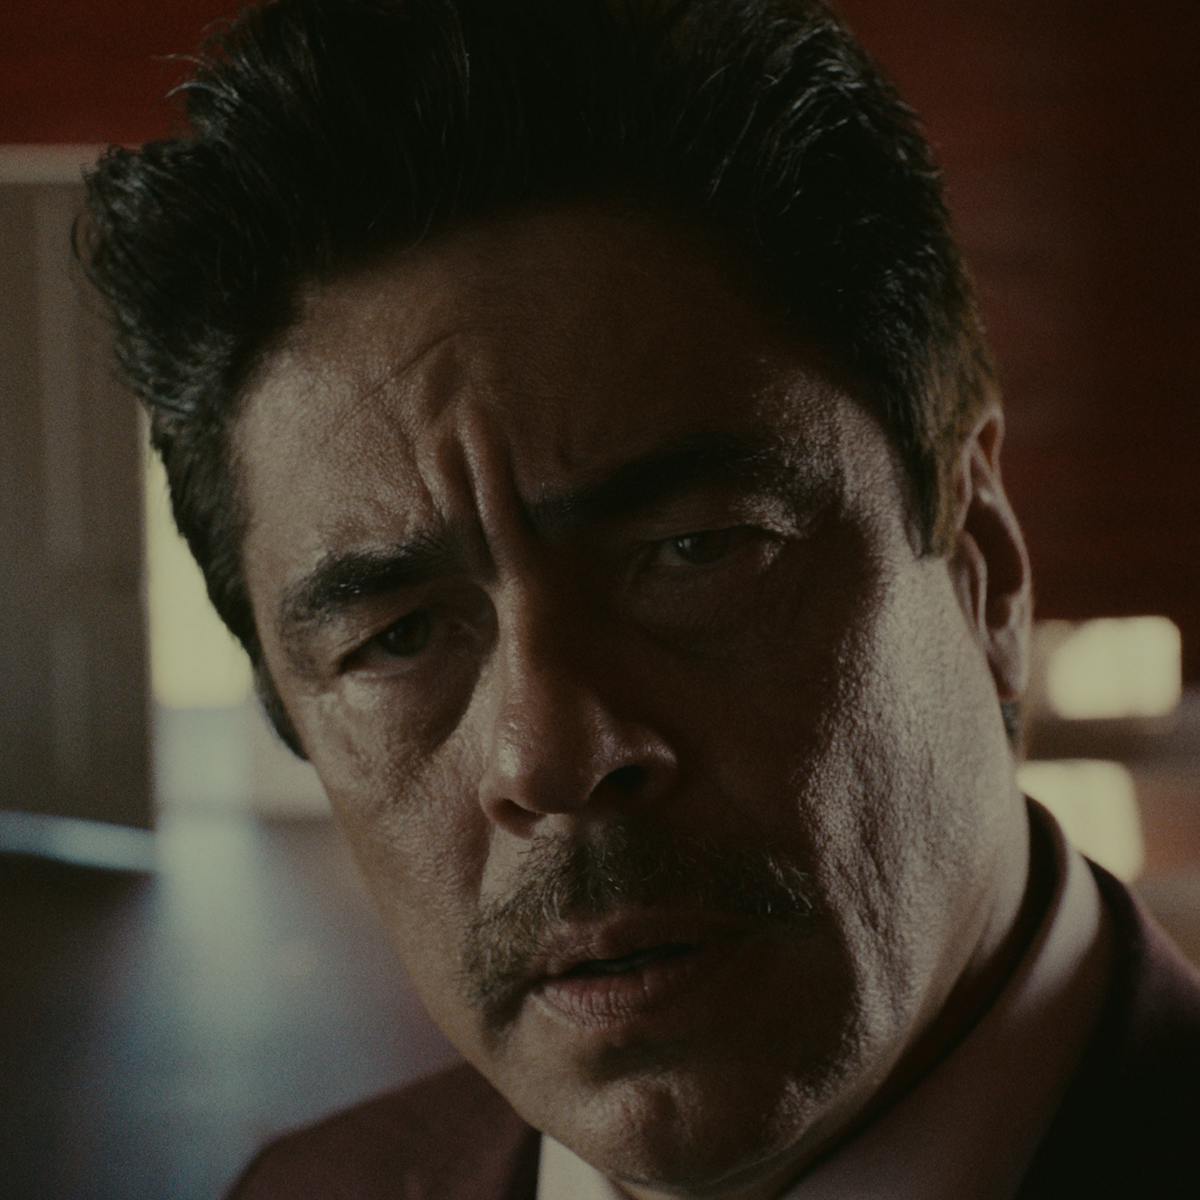 Tom Nichols (Benicio del Toro) looks perturbed in this close-up shot.